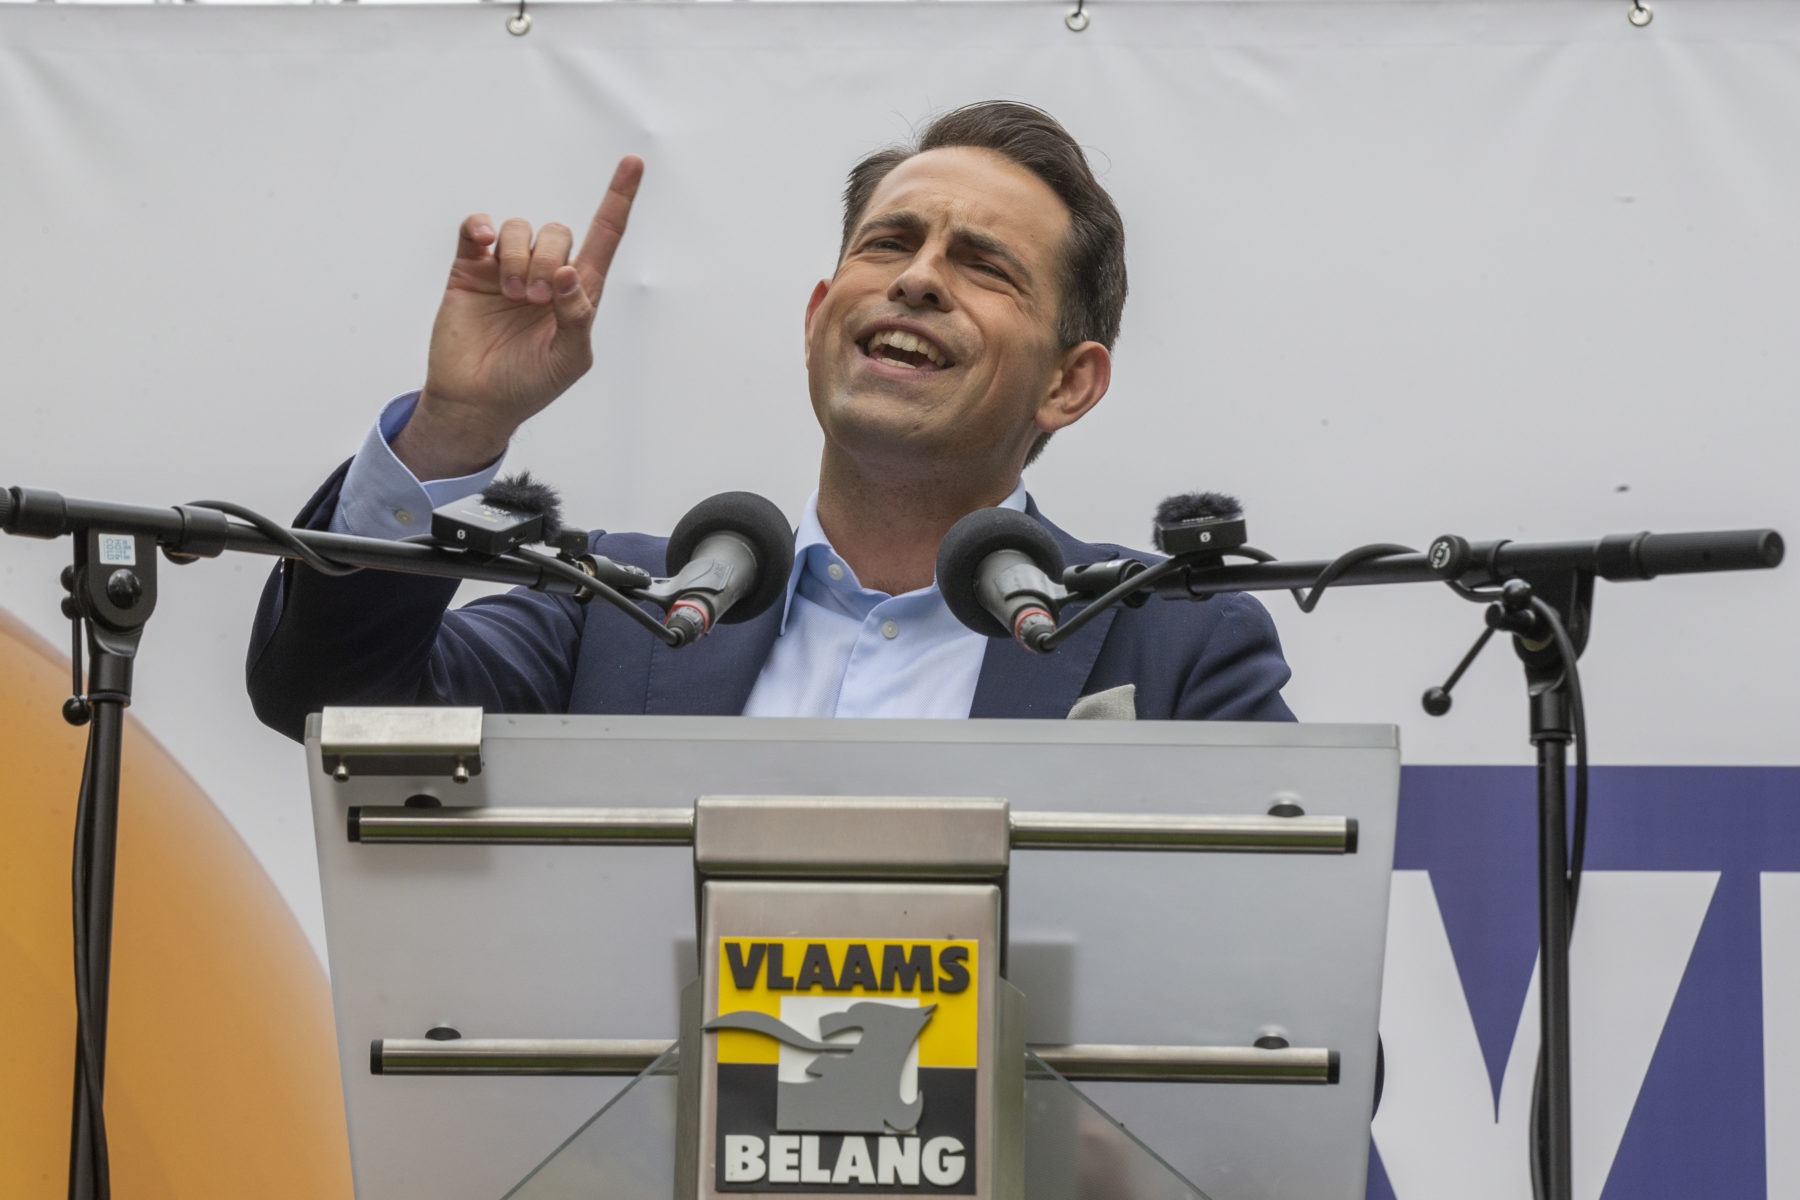 Crise de l’azote en Flandre : et le gagnant est… le Vlaams Belang